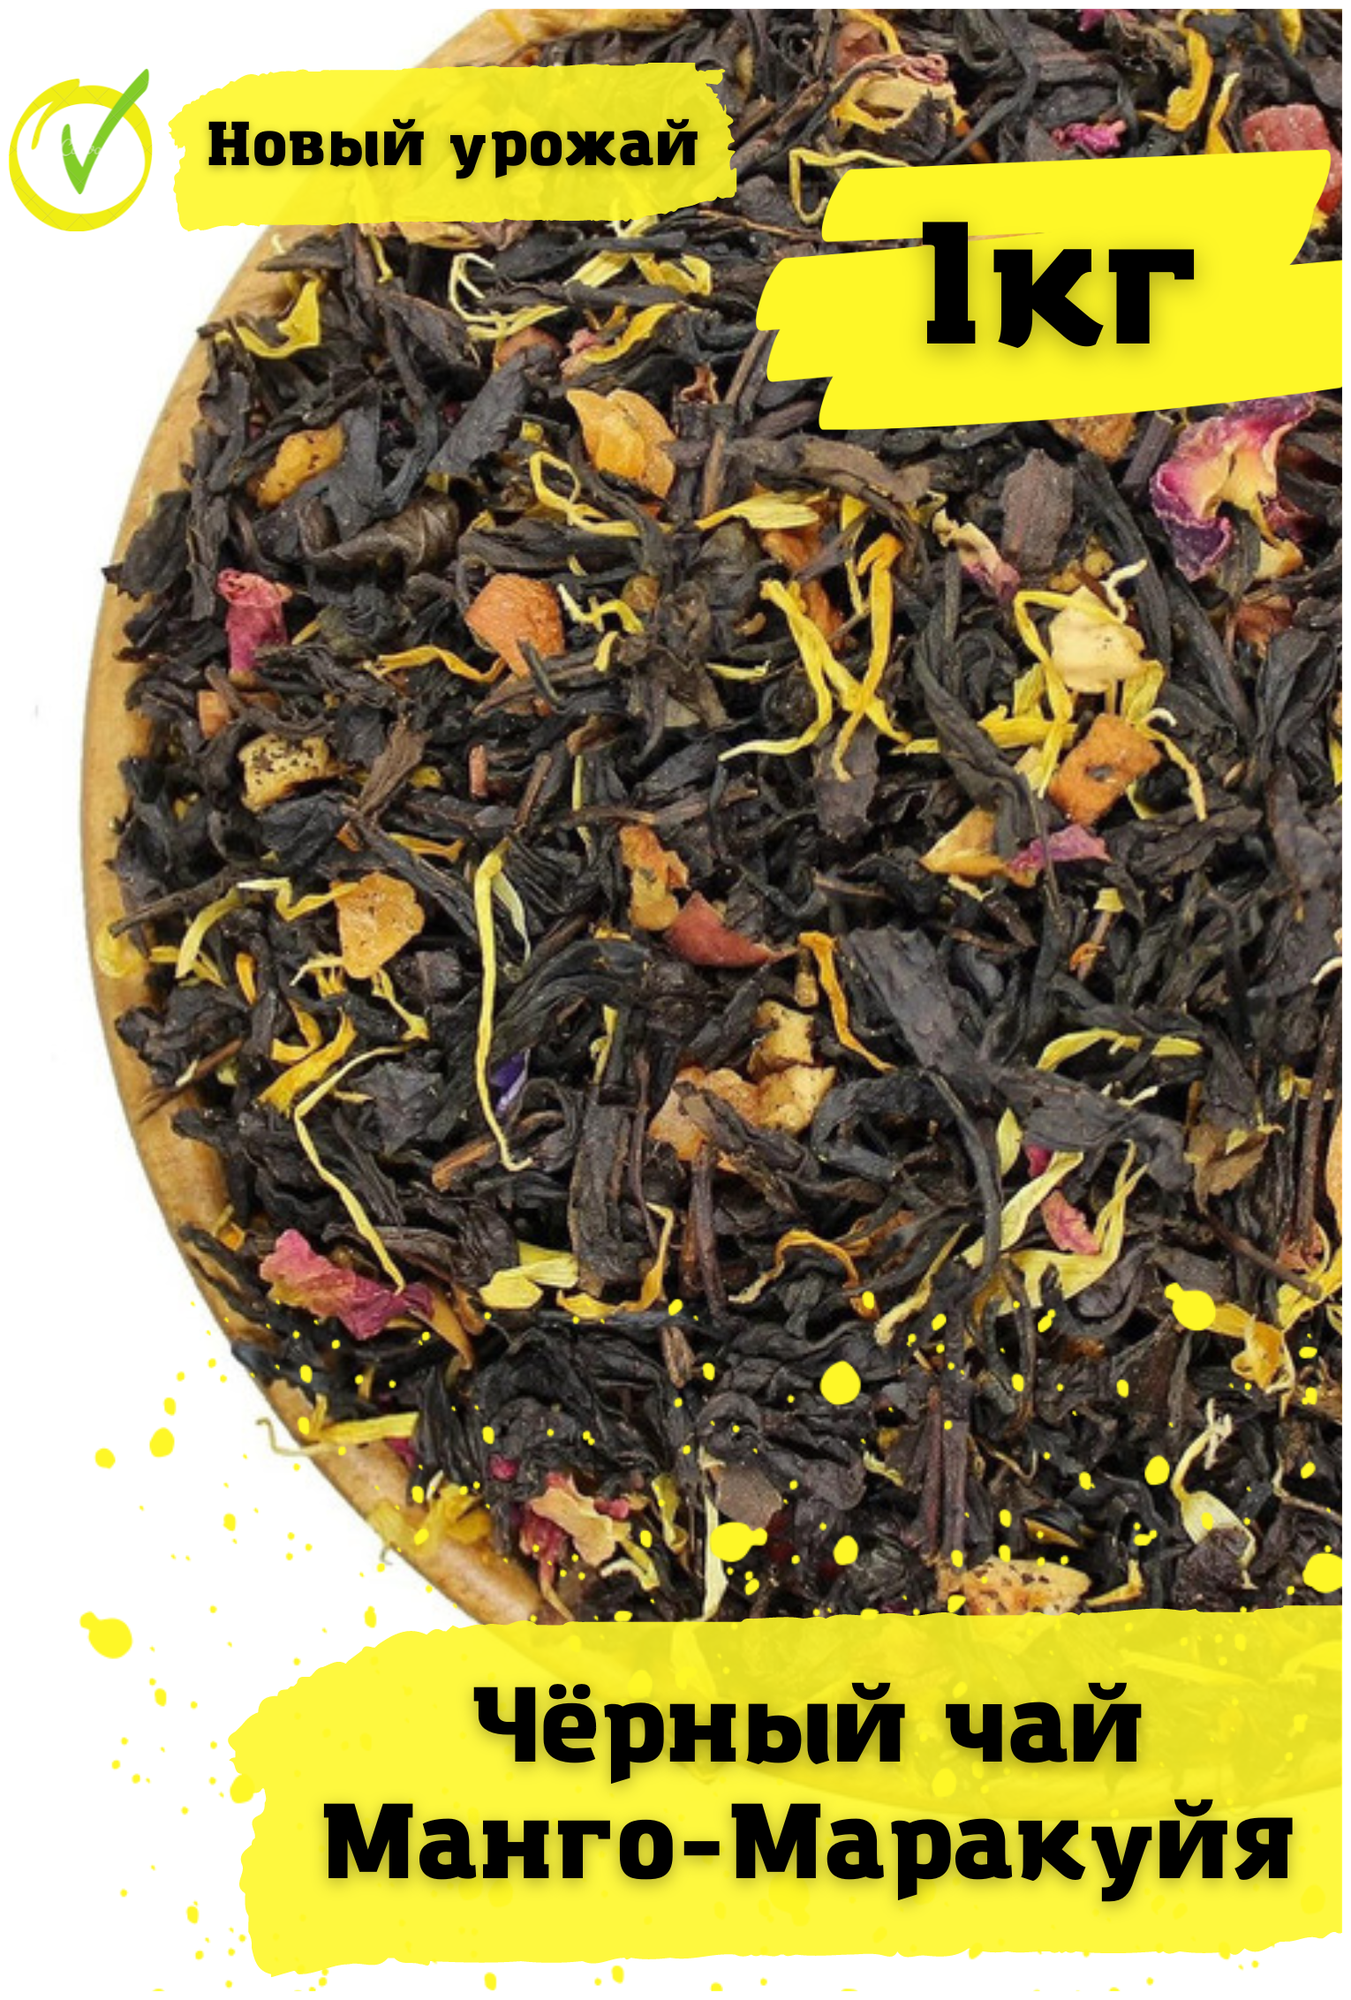 Чай черный листовой, фруктовфй Манго - Маракуйя 1кг